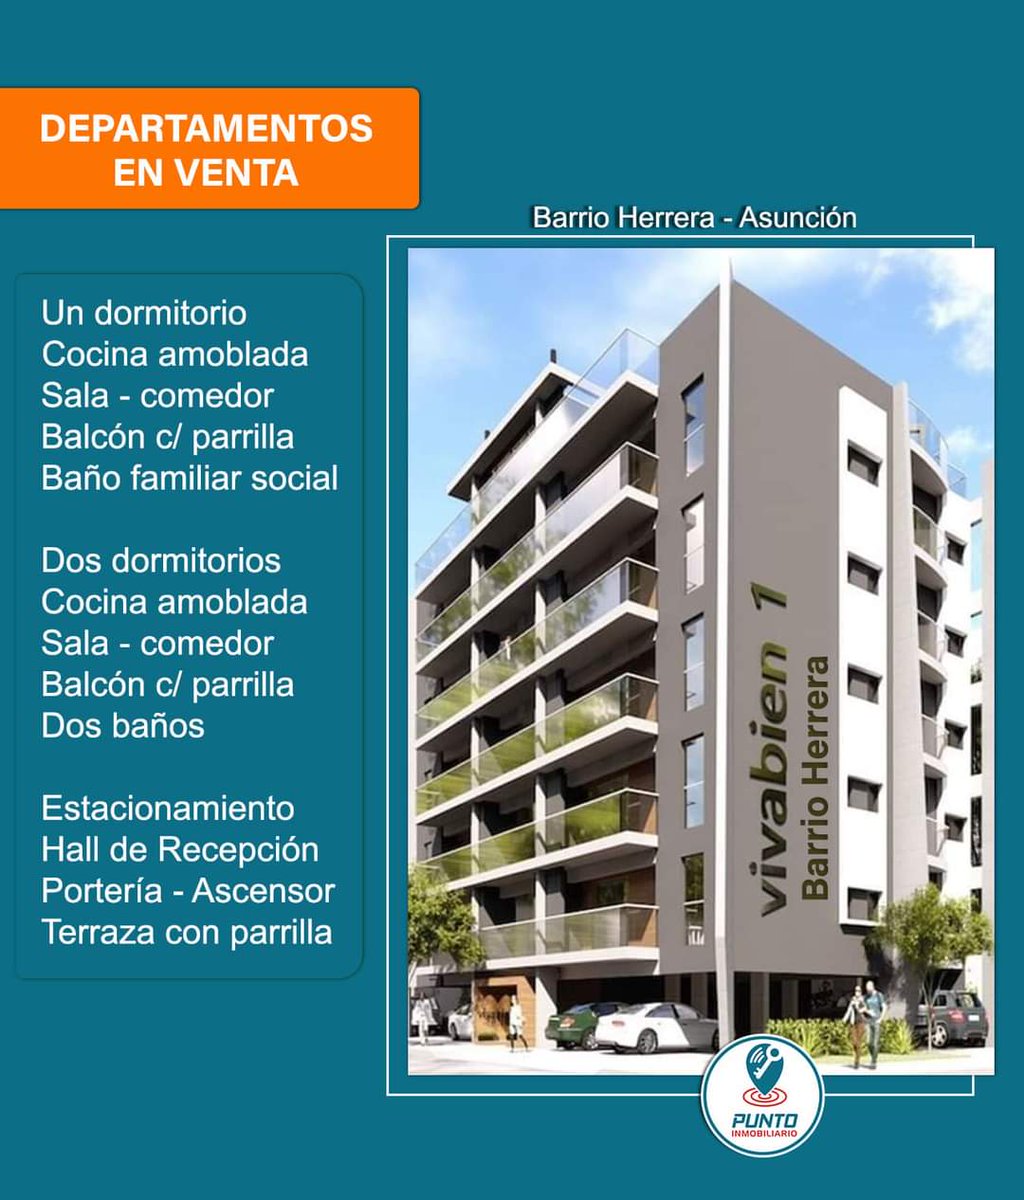 #puntoinmobiliario #experiencia #profesionalismo #confort #calidad #departamentos #asunción #barrioherrera #vivabien #ventadepartamentos